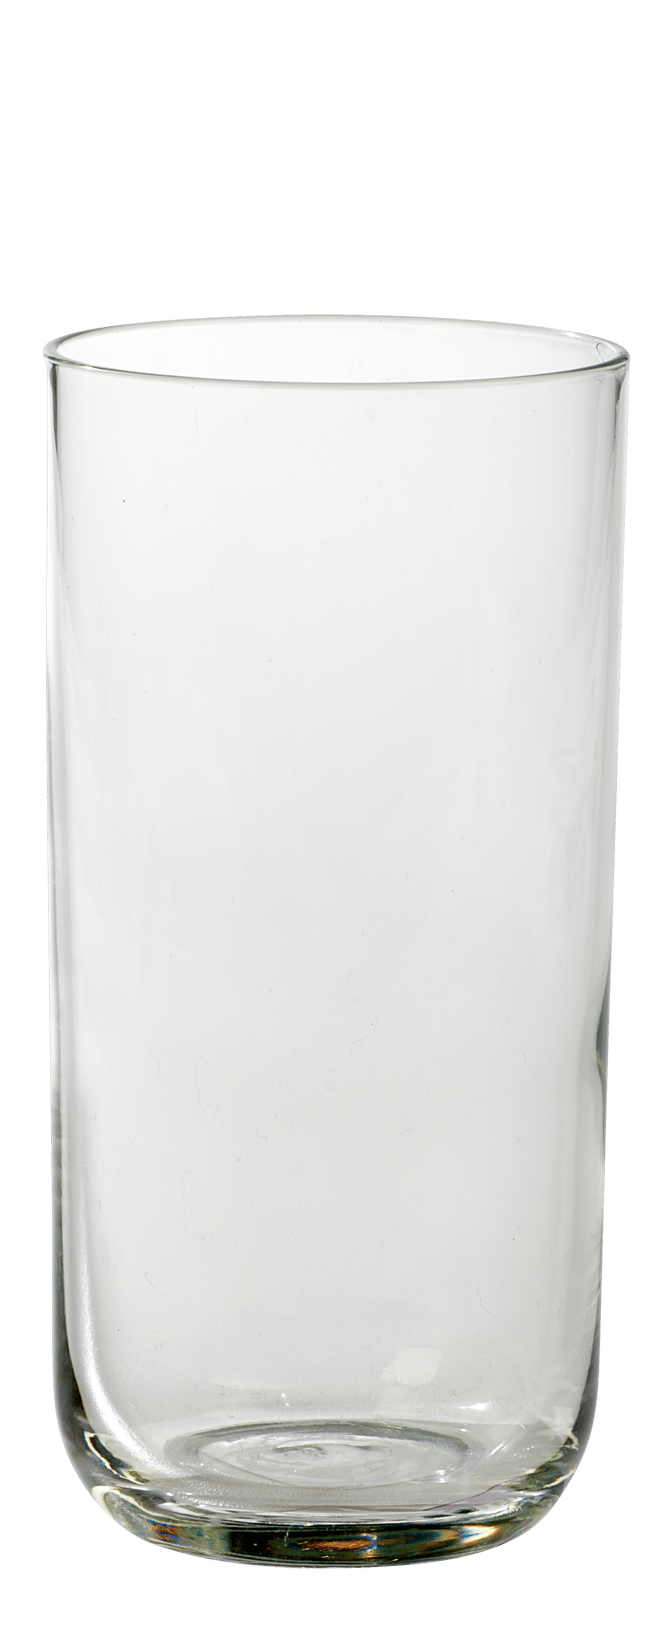 BLISS Vaso alto transparente A 13,4 cm - Ø 6,5 cm